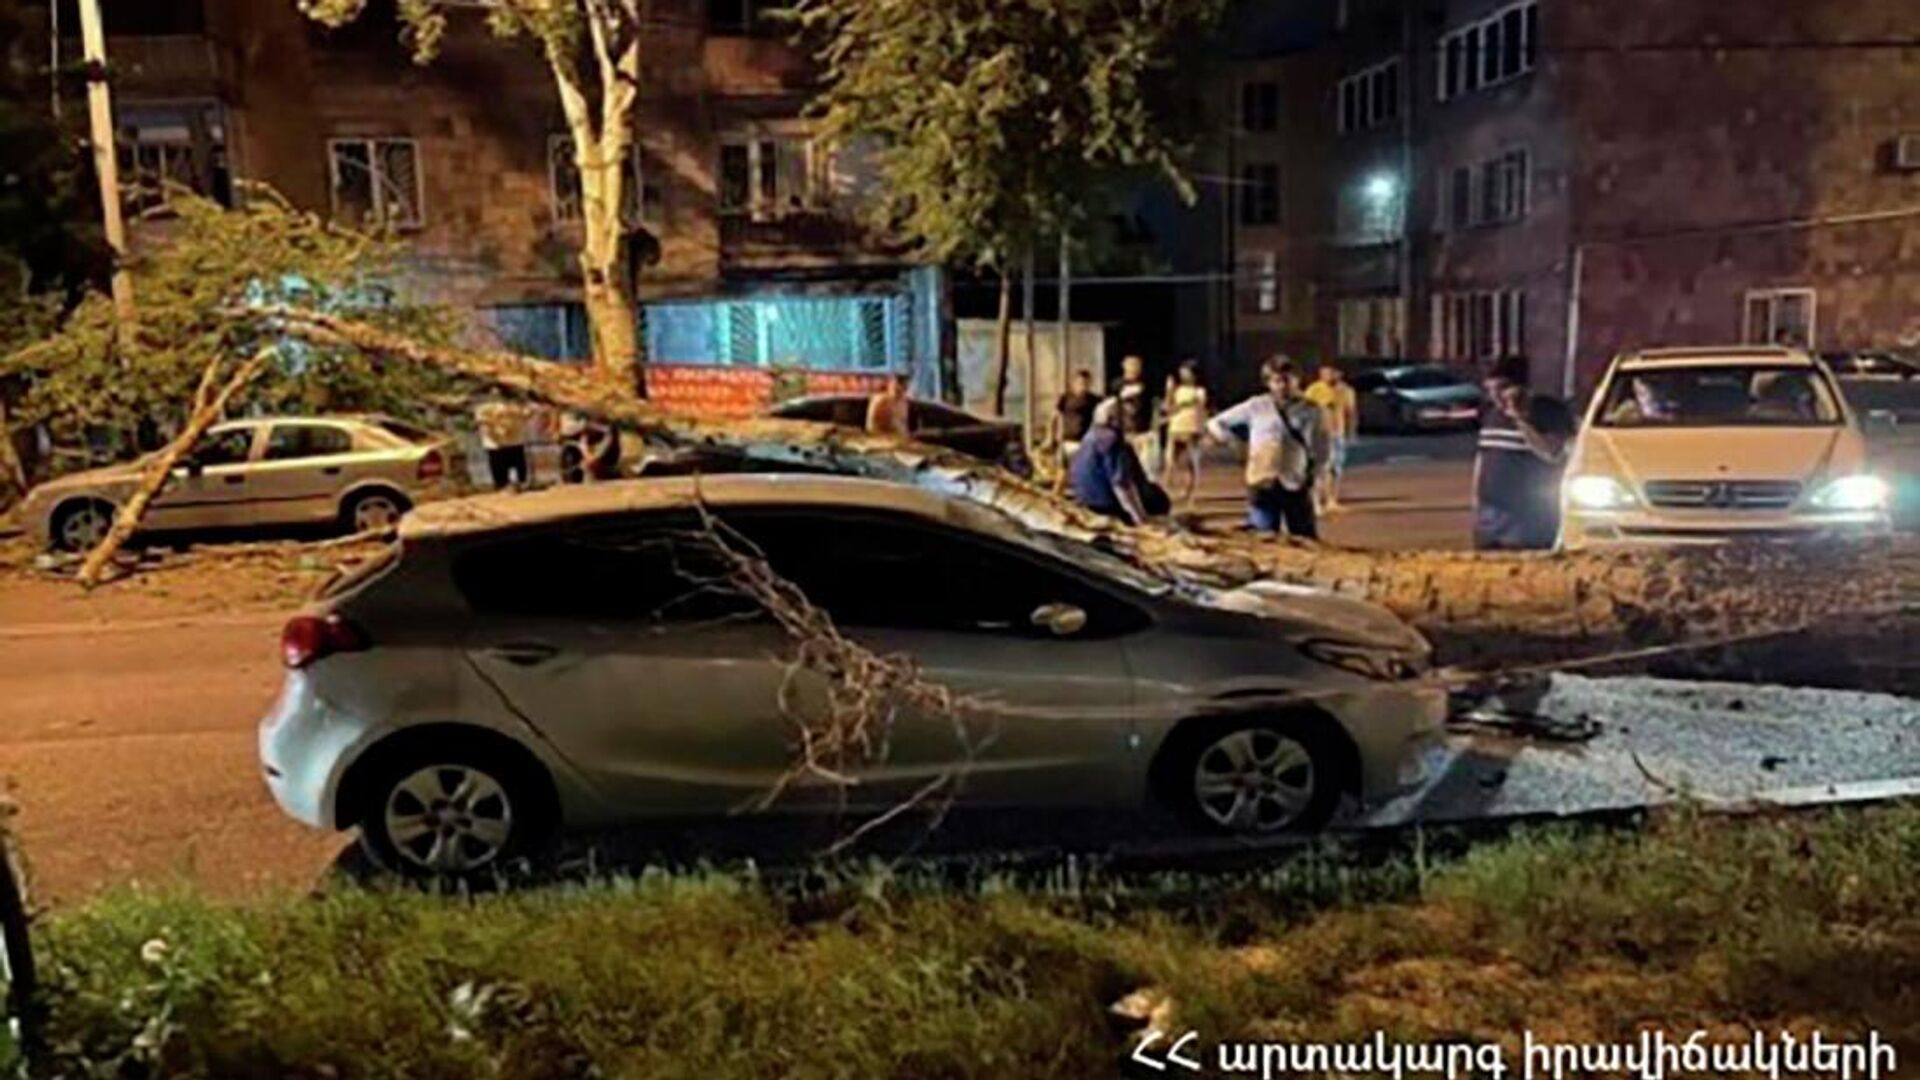 Во дворе дома N 4 по улице Наирян при сильном ветре сломалось дерево и упало на 3 припаркованных автомобиля (5 июня 2022). Абовян - Sputnik Армения, 1920, 05.06.2022